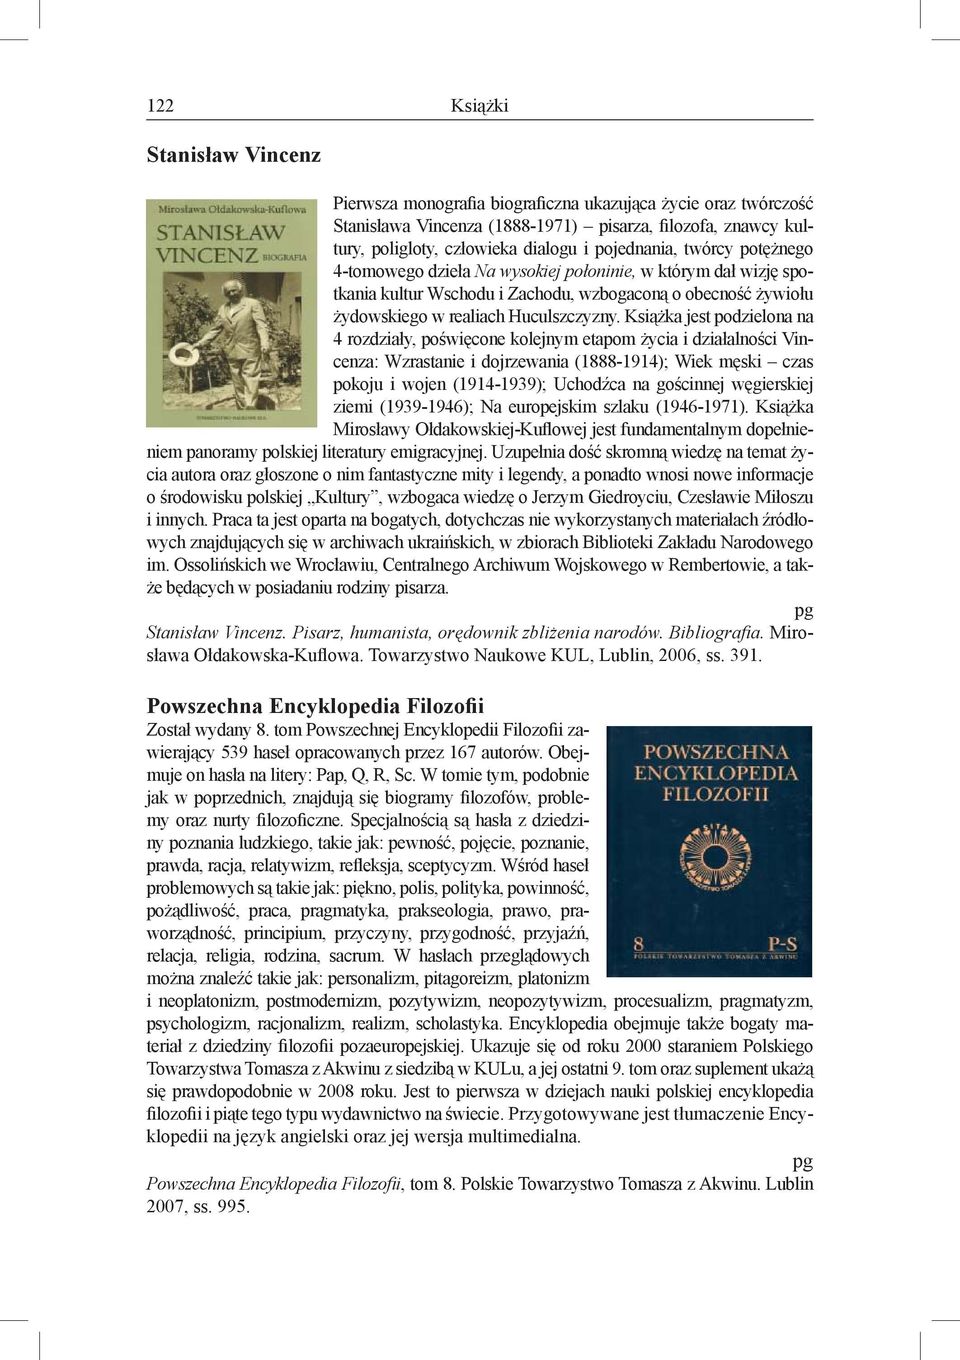 Książka jest podzielona na 4 rozdziały, poświęcone kolejnym etapom życia i działalności Vincenza: Wzrastanie i dojrzewania (1888-1914); Wiek męski czas pokoju i wojen (1914-1939); Uchodźca na